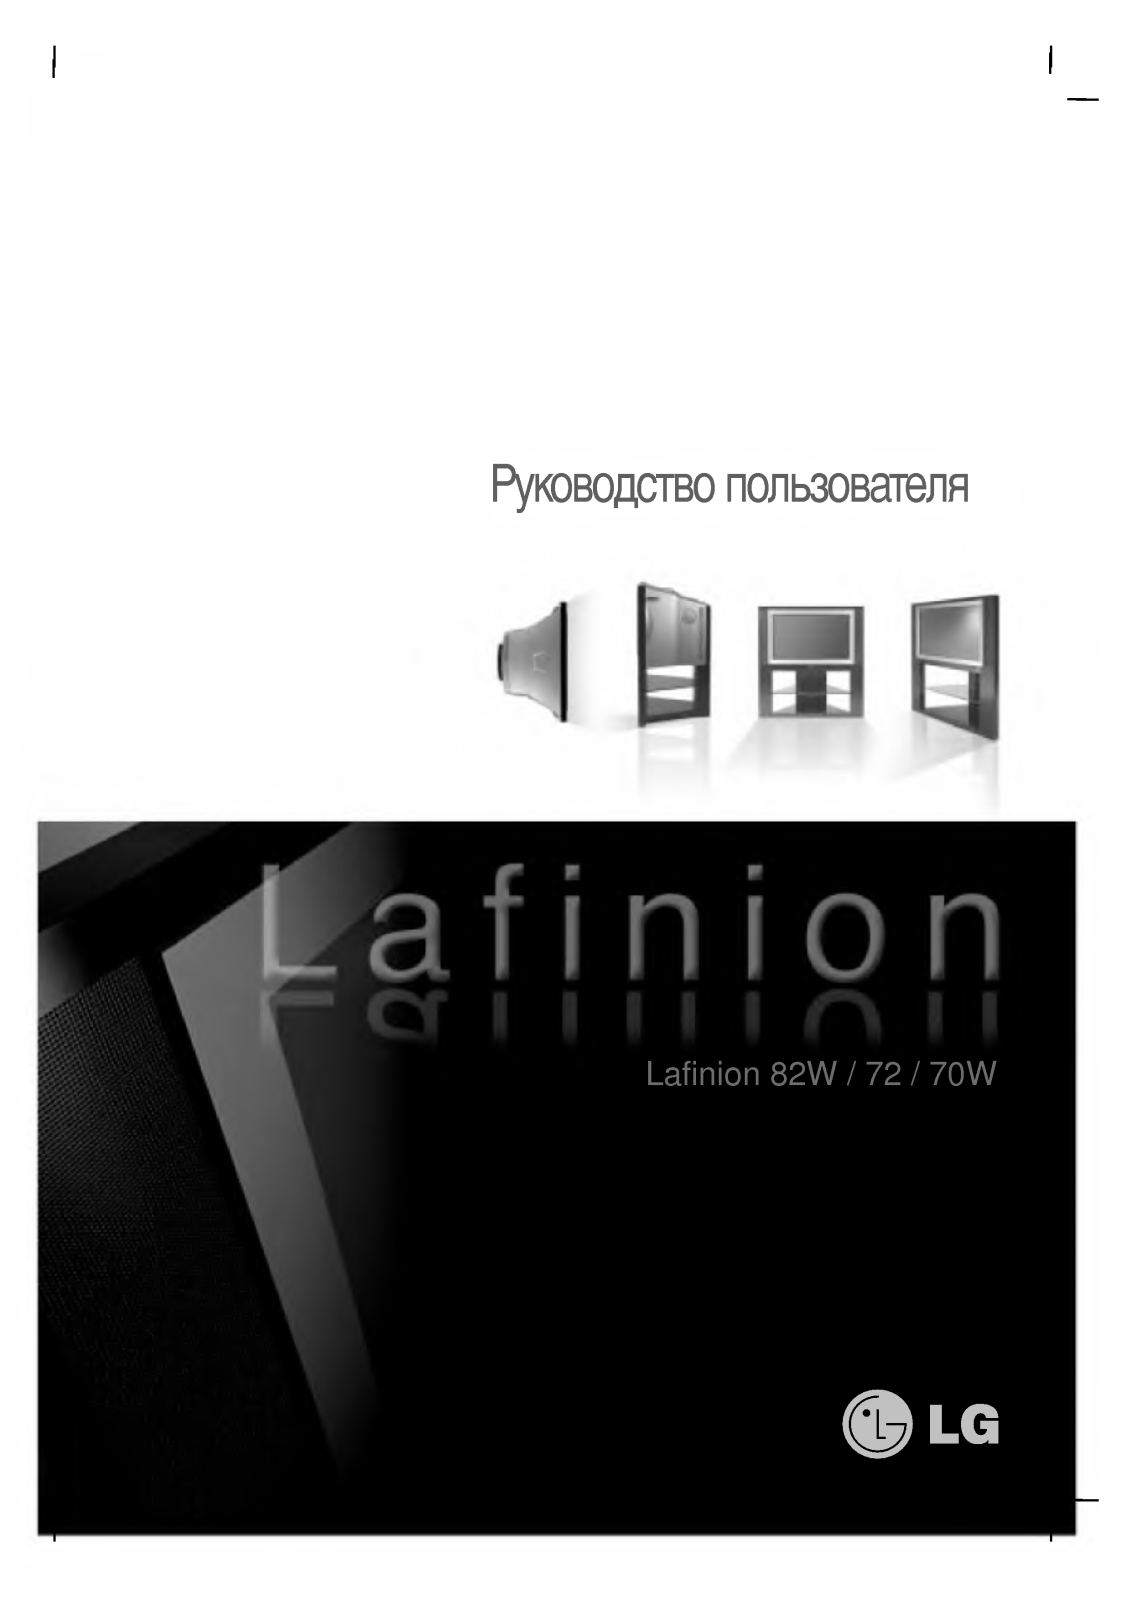 Lg LAFINION 70W, LAFINION 72, LAFINION 82W User Manual